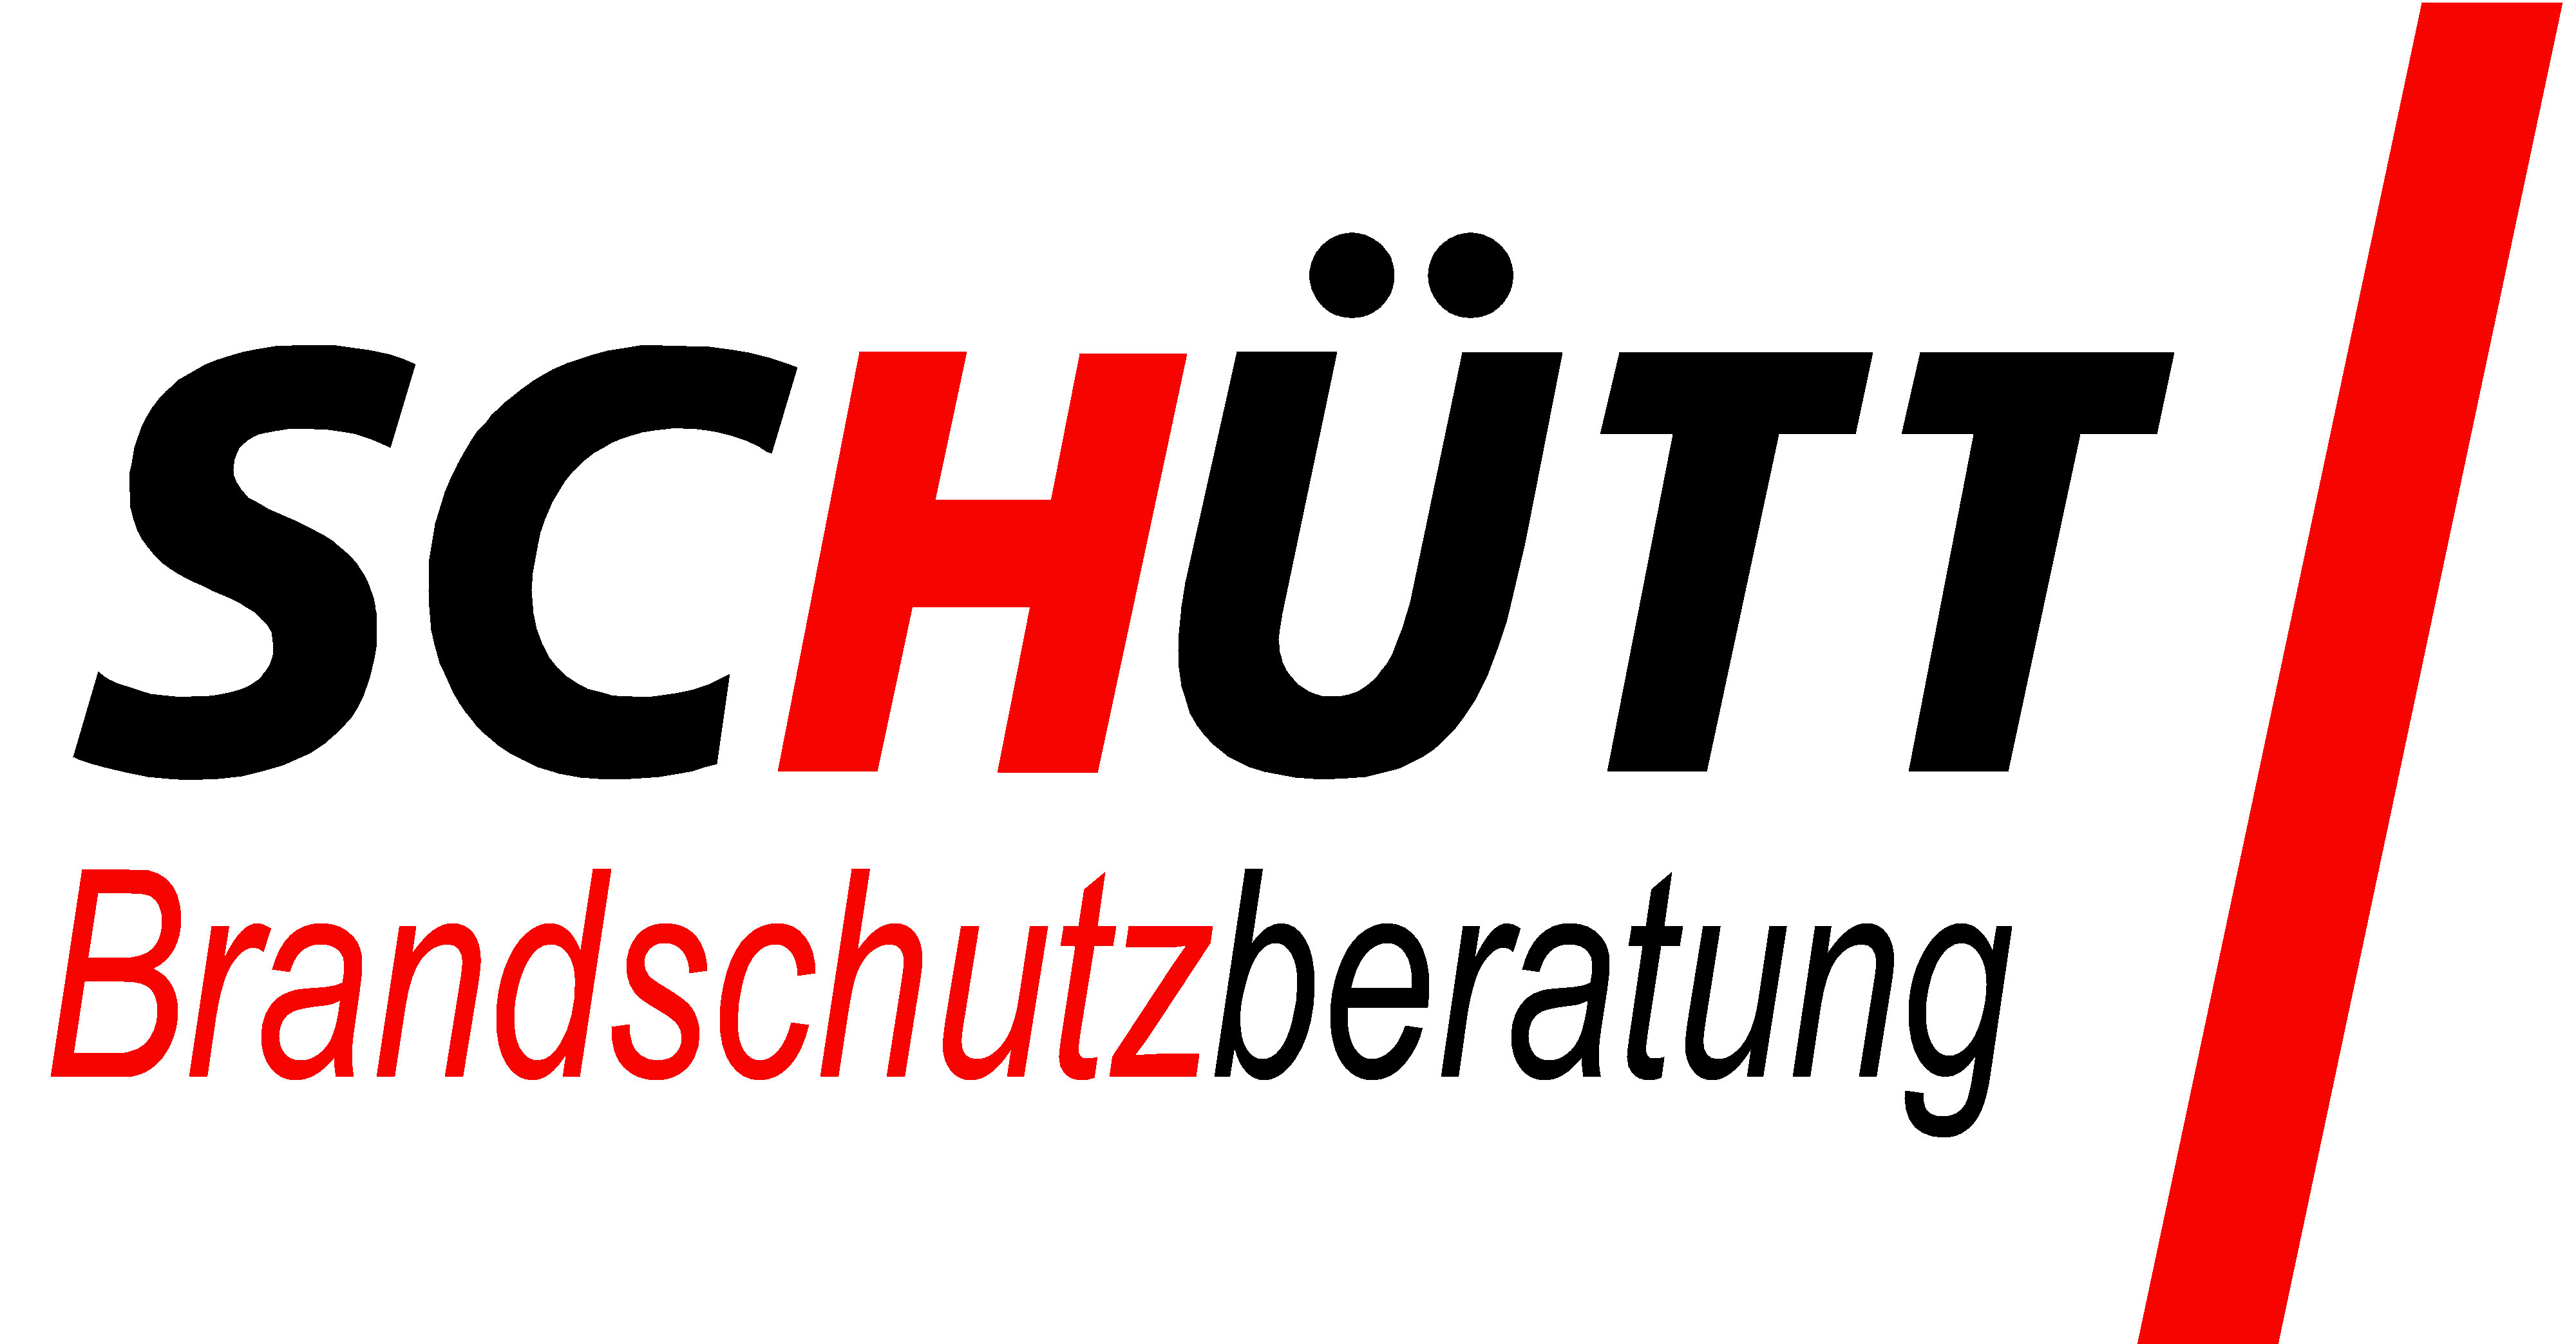 Brandschutzberatung Schütt GmbH Co. KG.